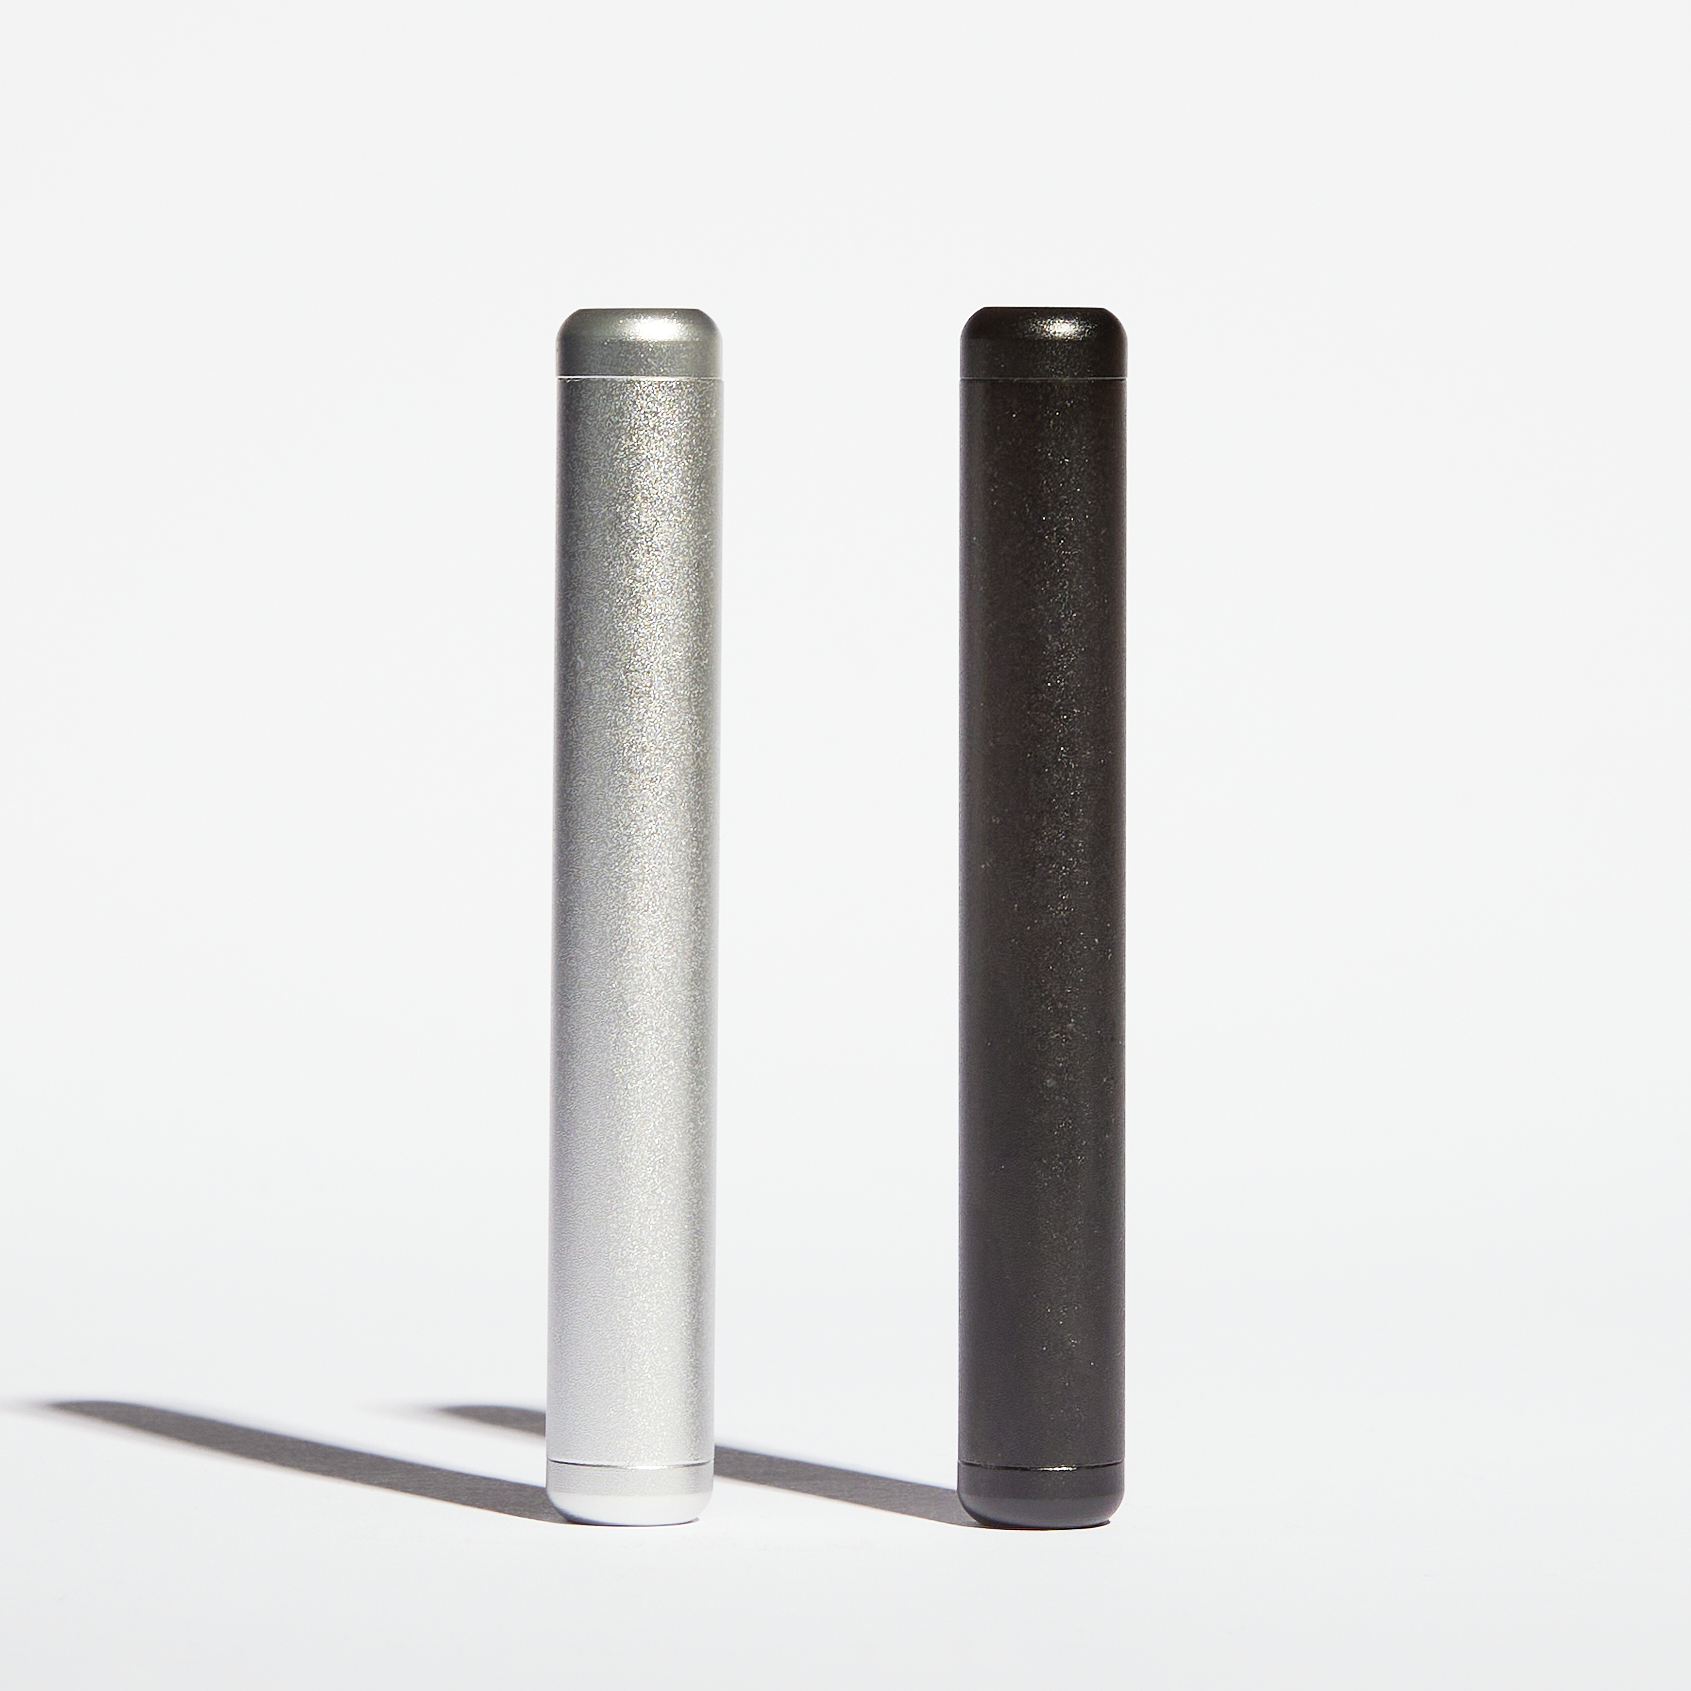 Torpedo Joint Hülle, Aluminium Joint Case für Zigaretten & Joints, silber, präzise gefräst